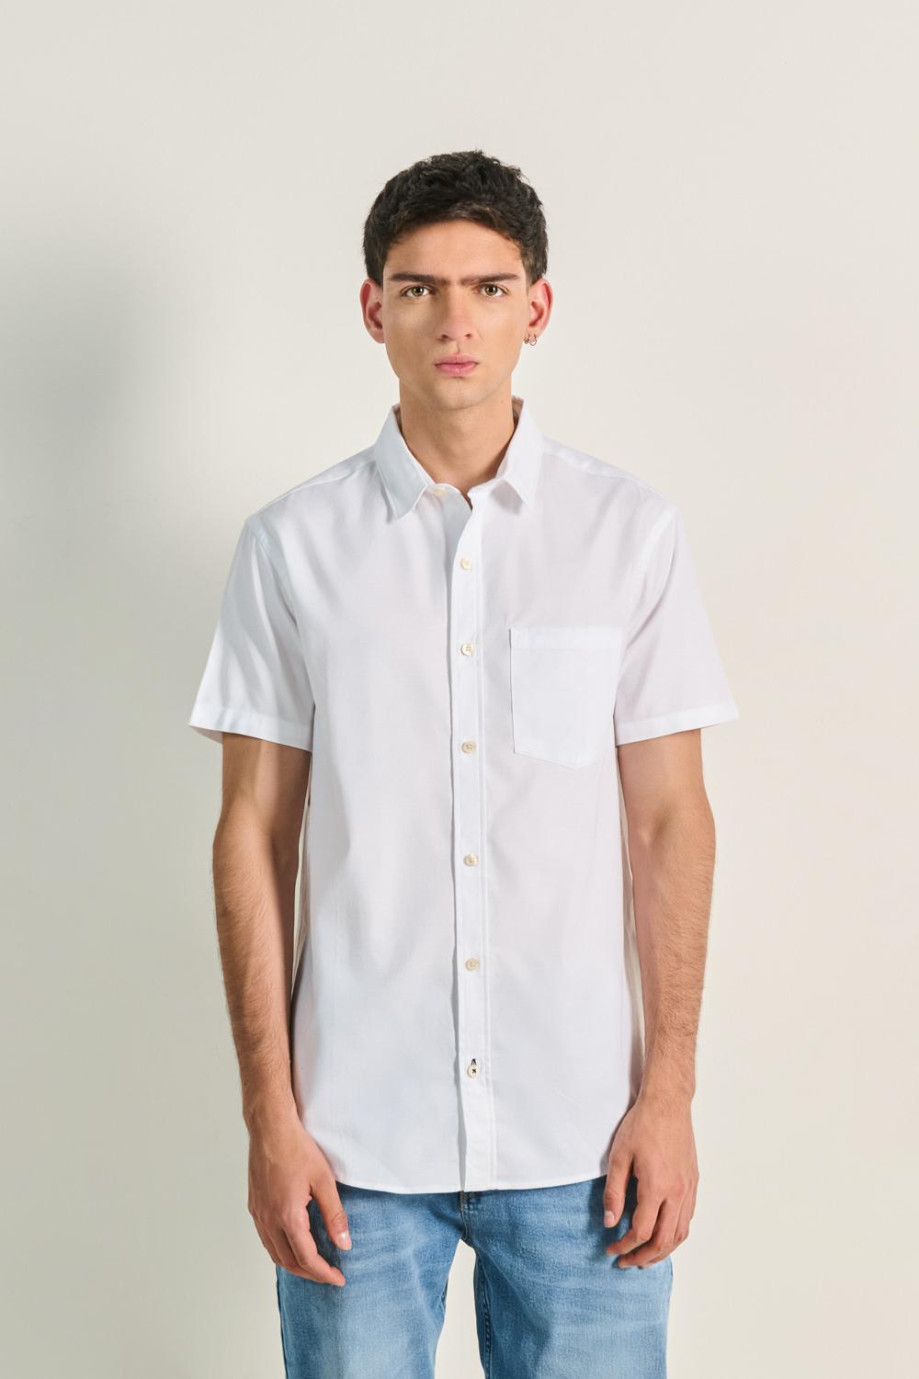 Camisa blanca manga corta con bolsillo en el pecho